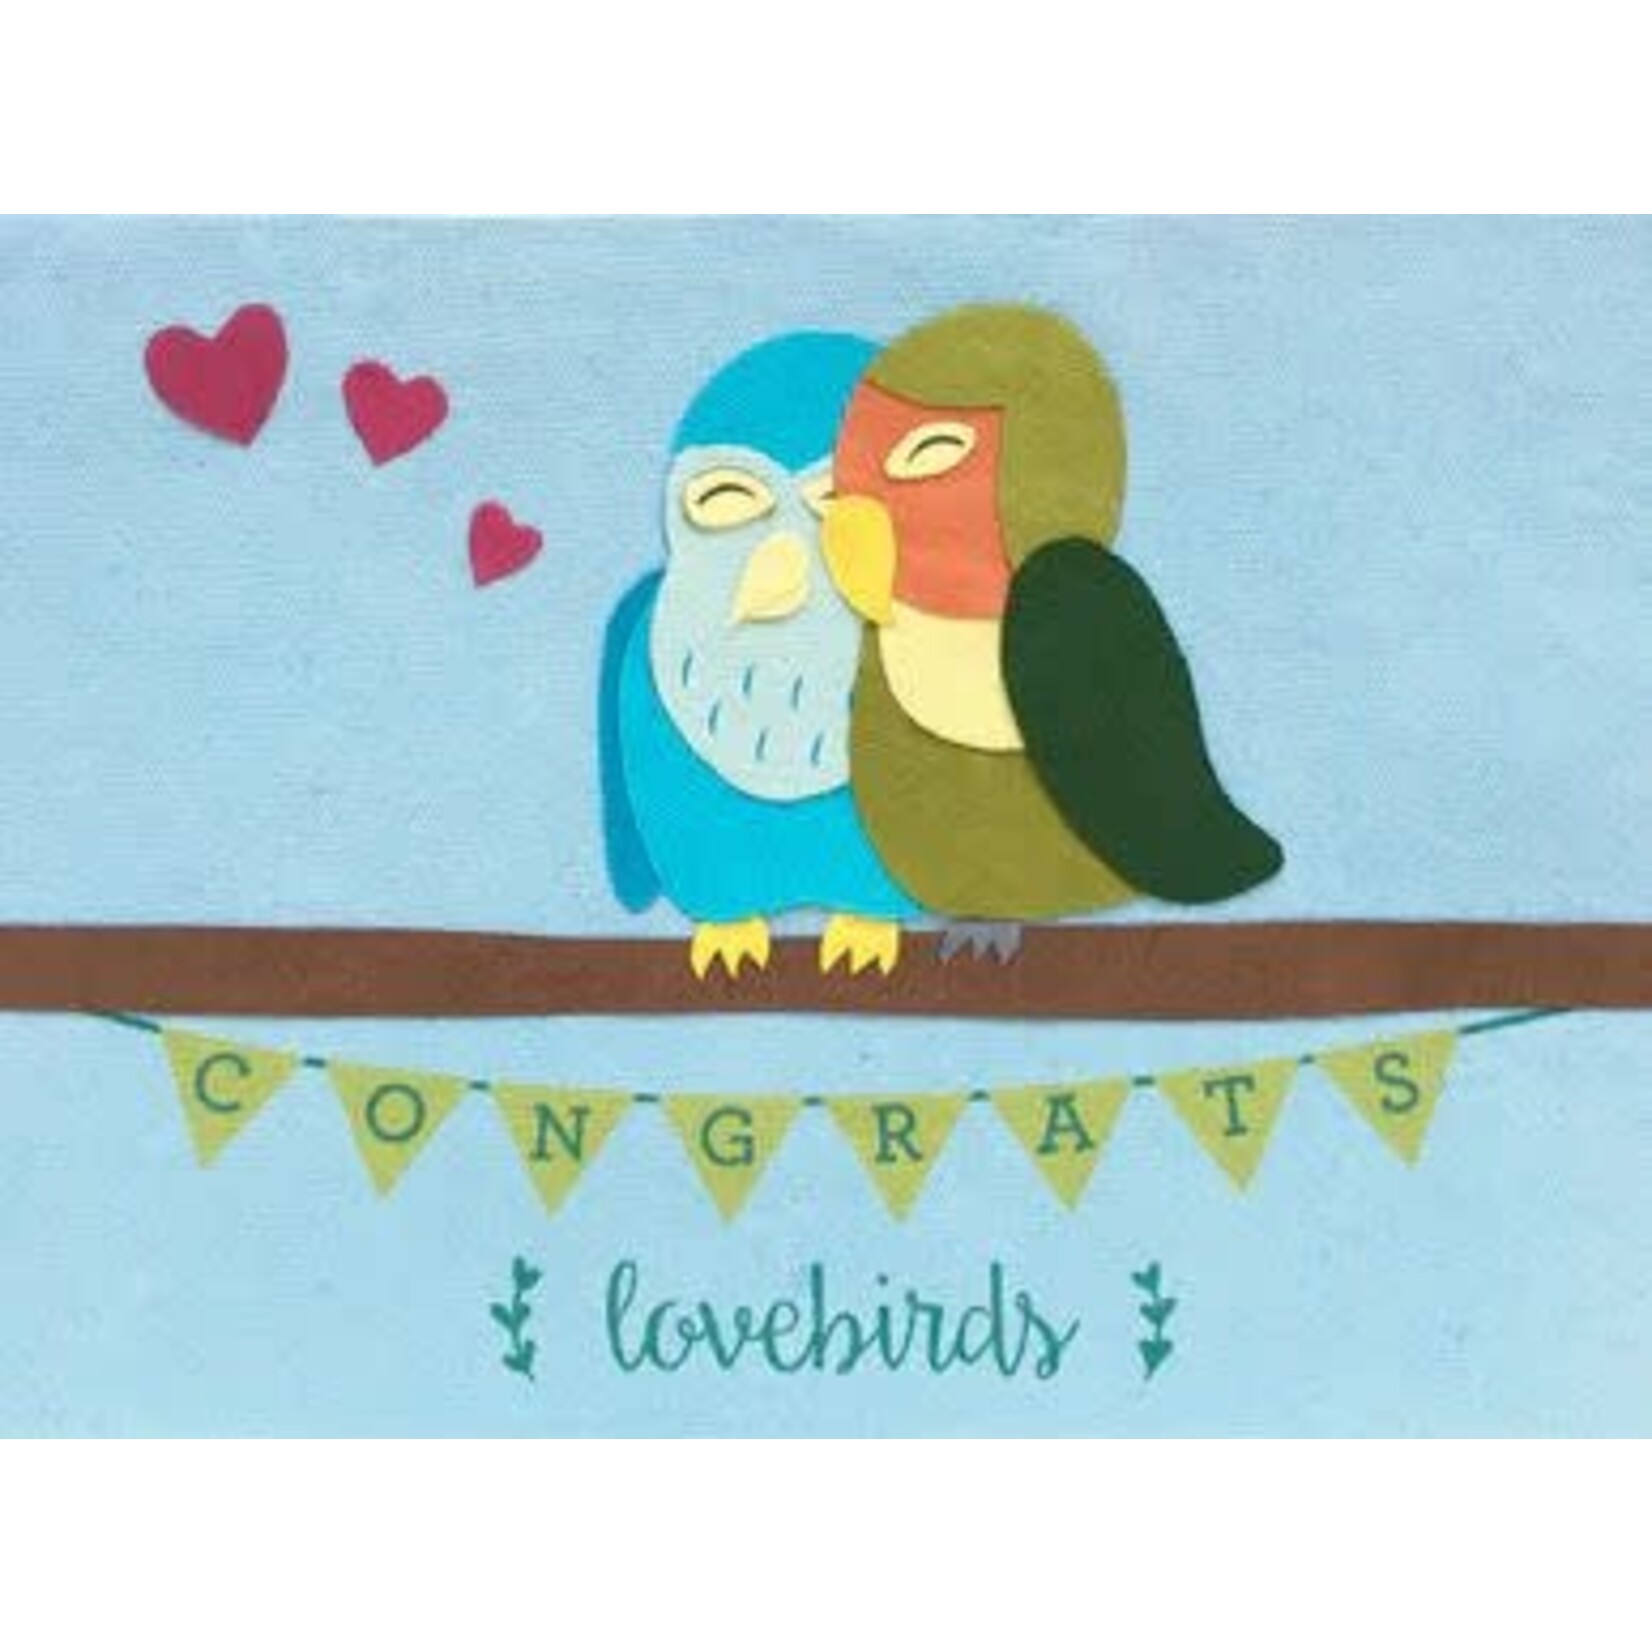 Rwanda Congrats Love Birds Card